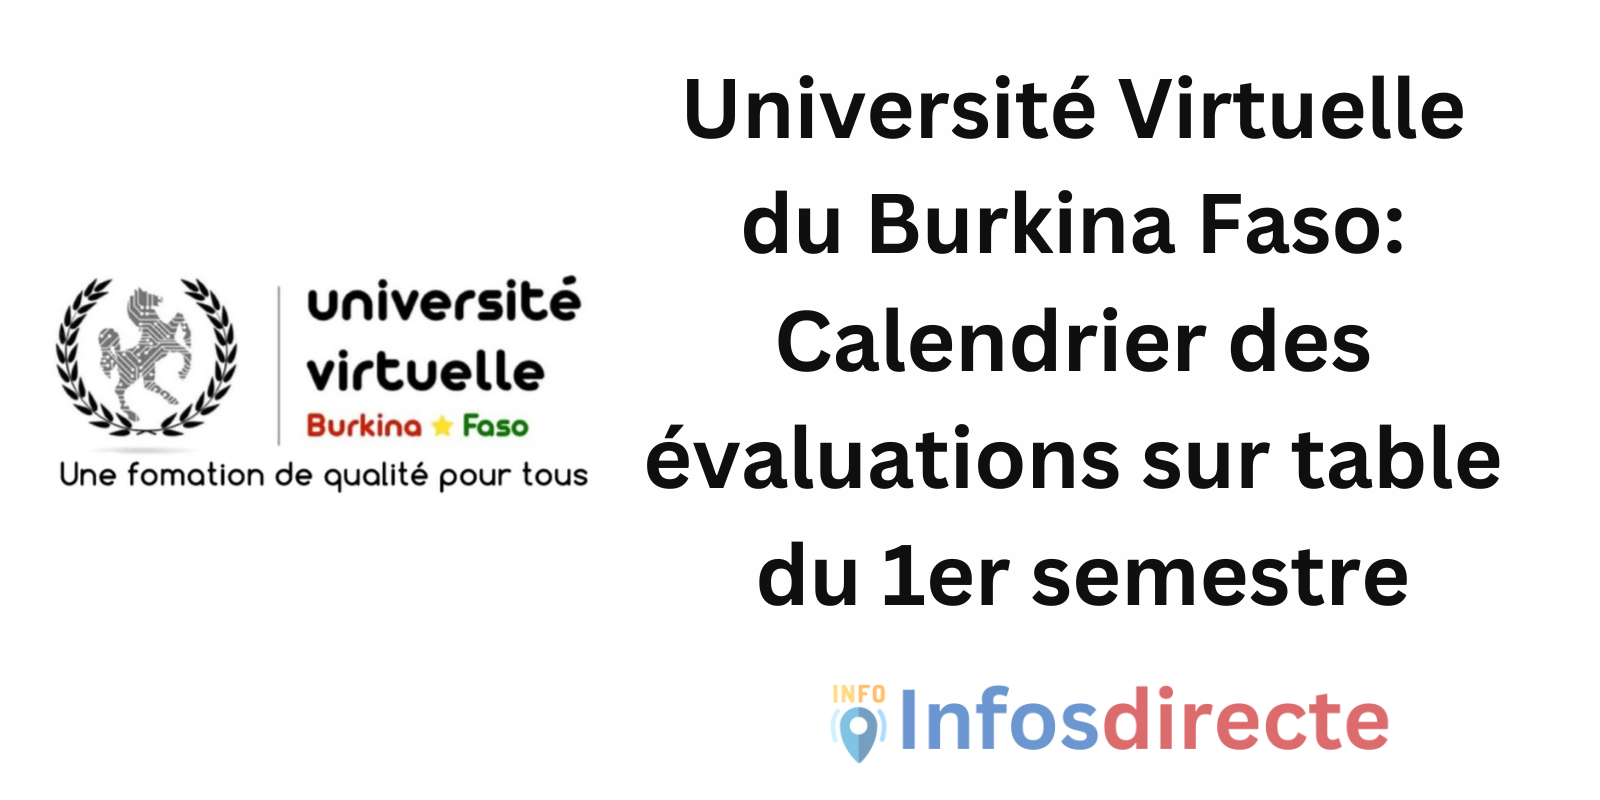 Université Virtuelle du Burkina Faso: Calendrier des évaluations sur table du 1er semestre